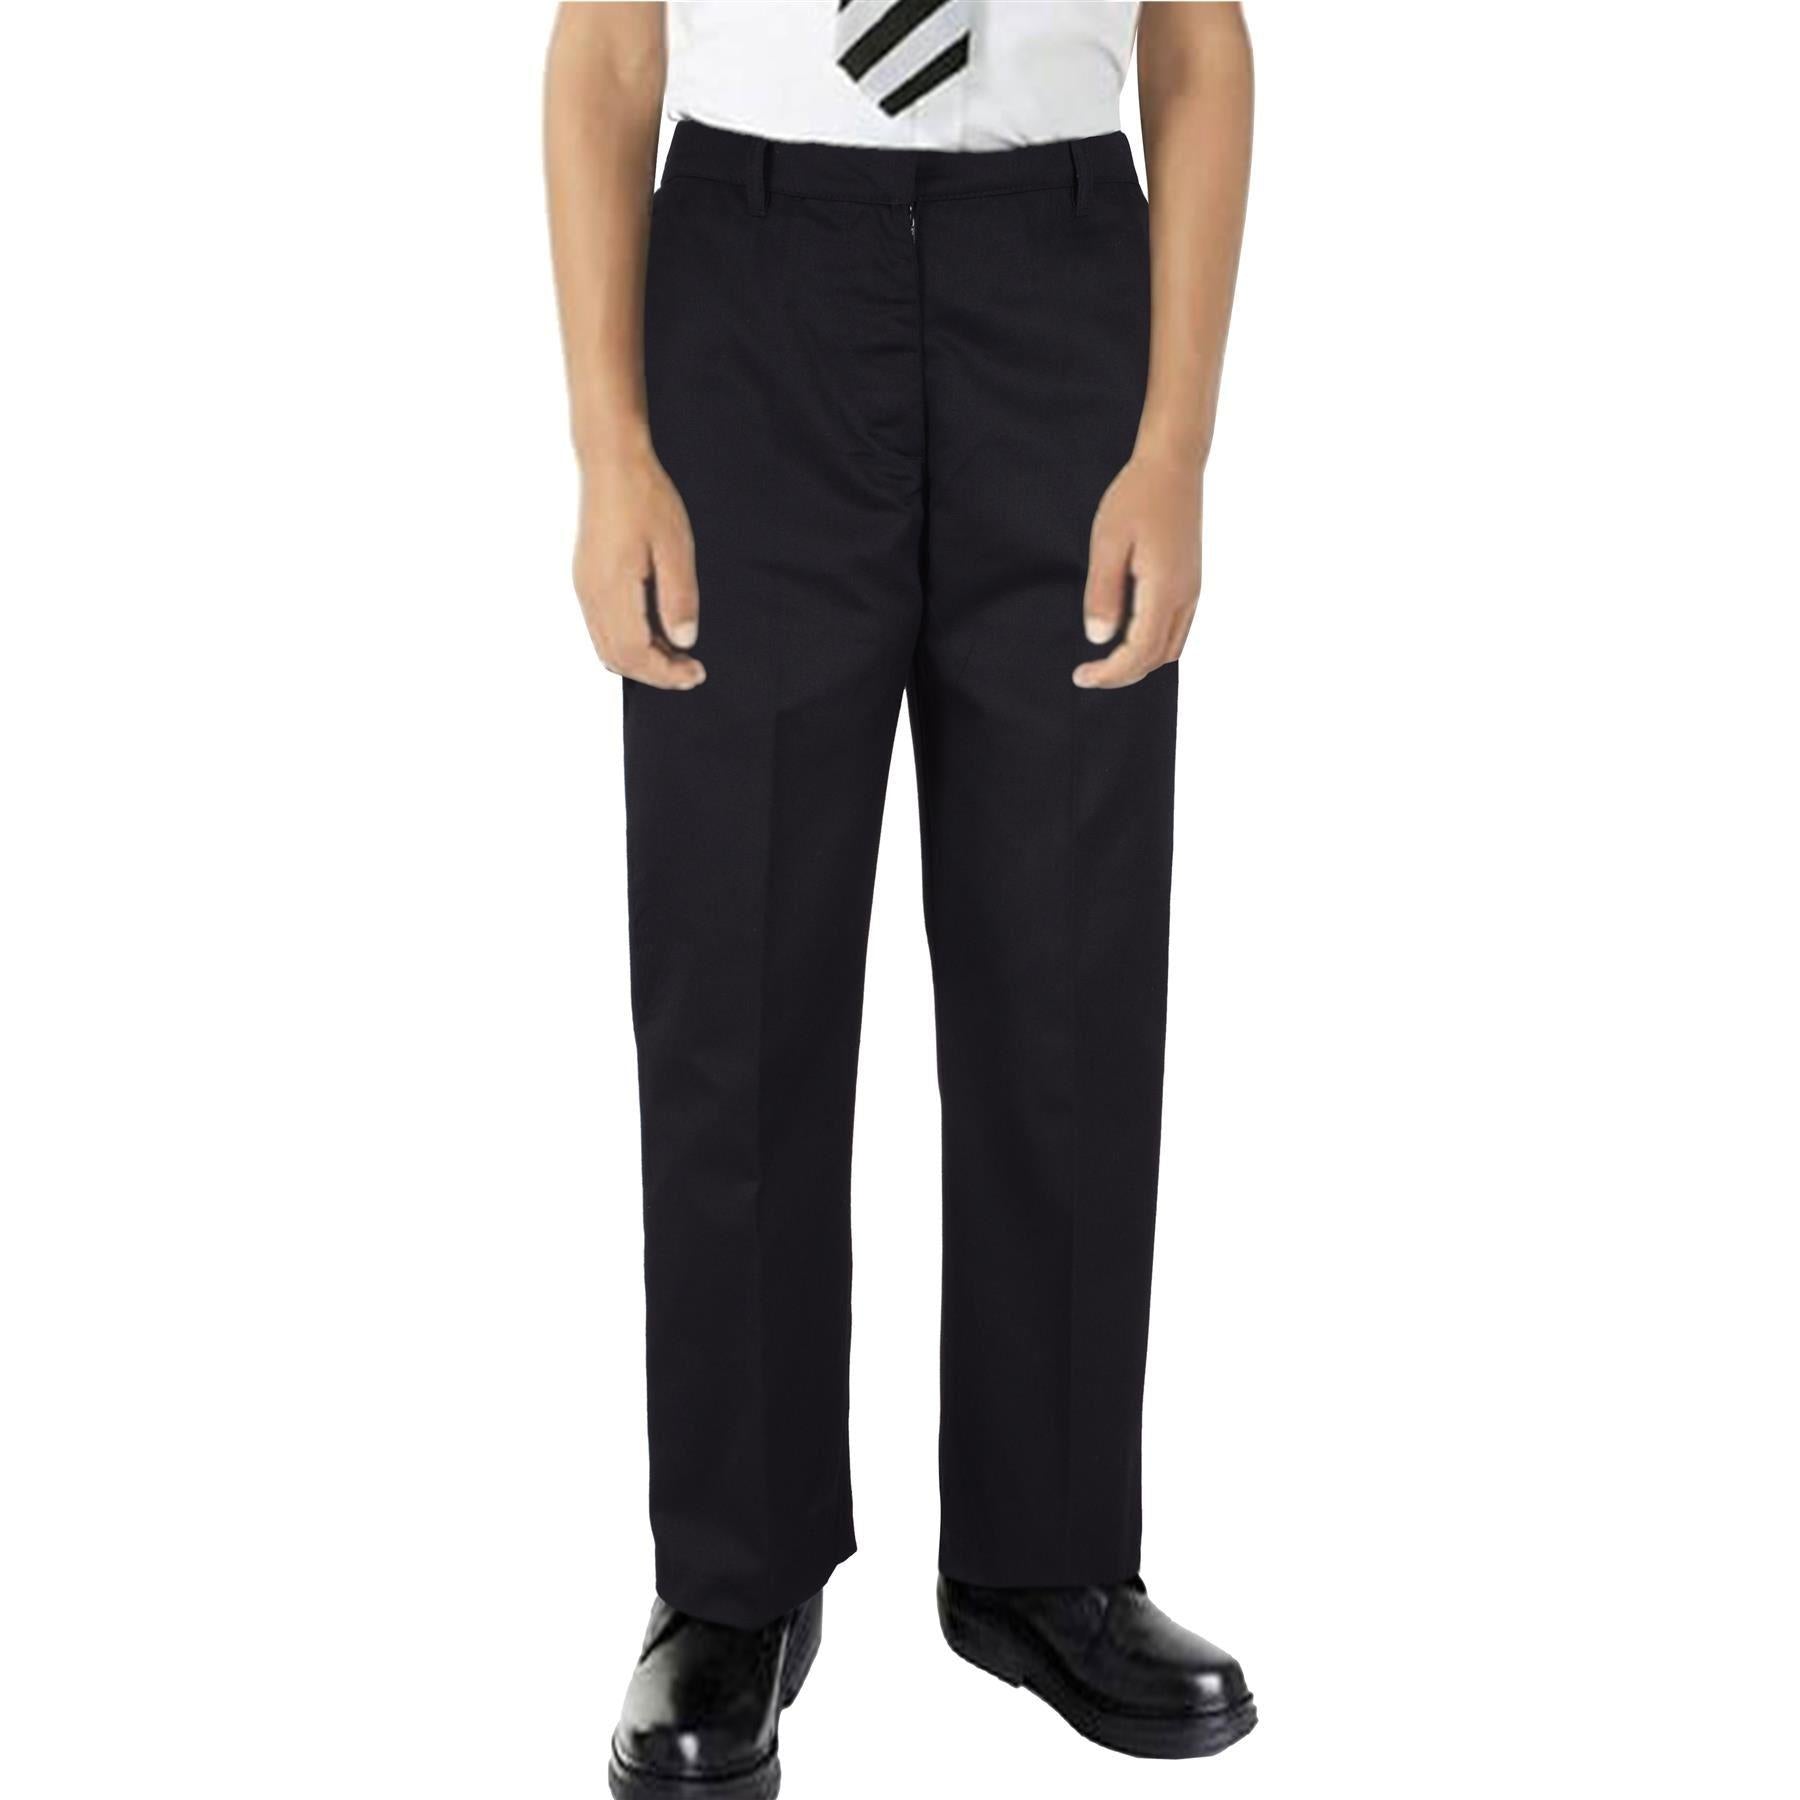 Kids Boys Pants Plain School Uniform Pull Up Regular Fit Lightweight Trouser